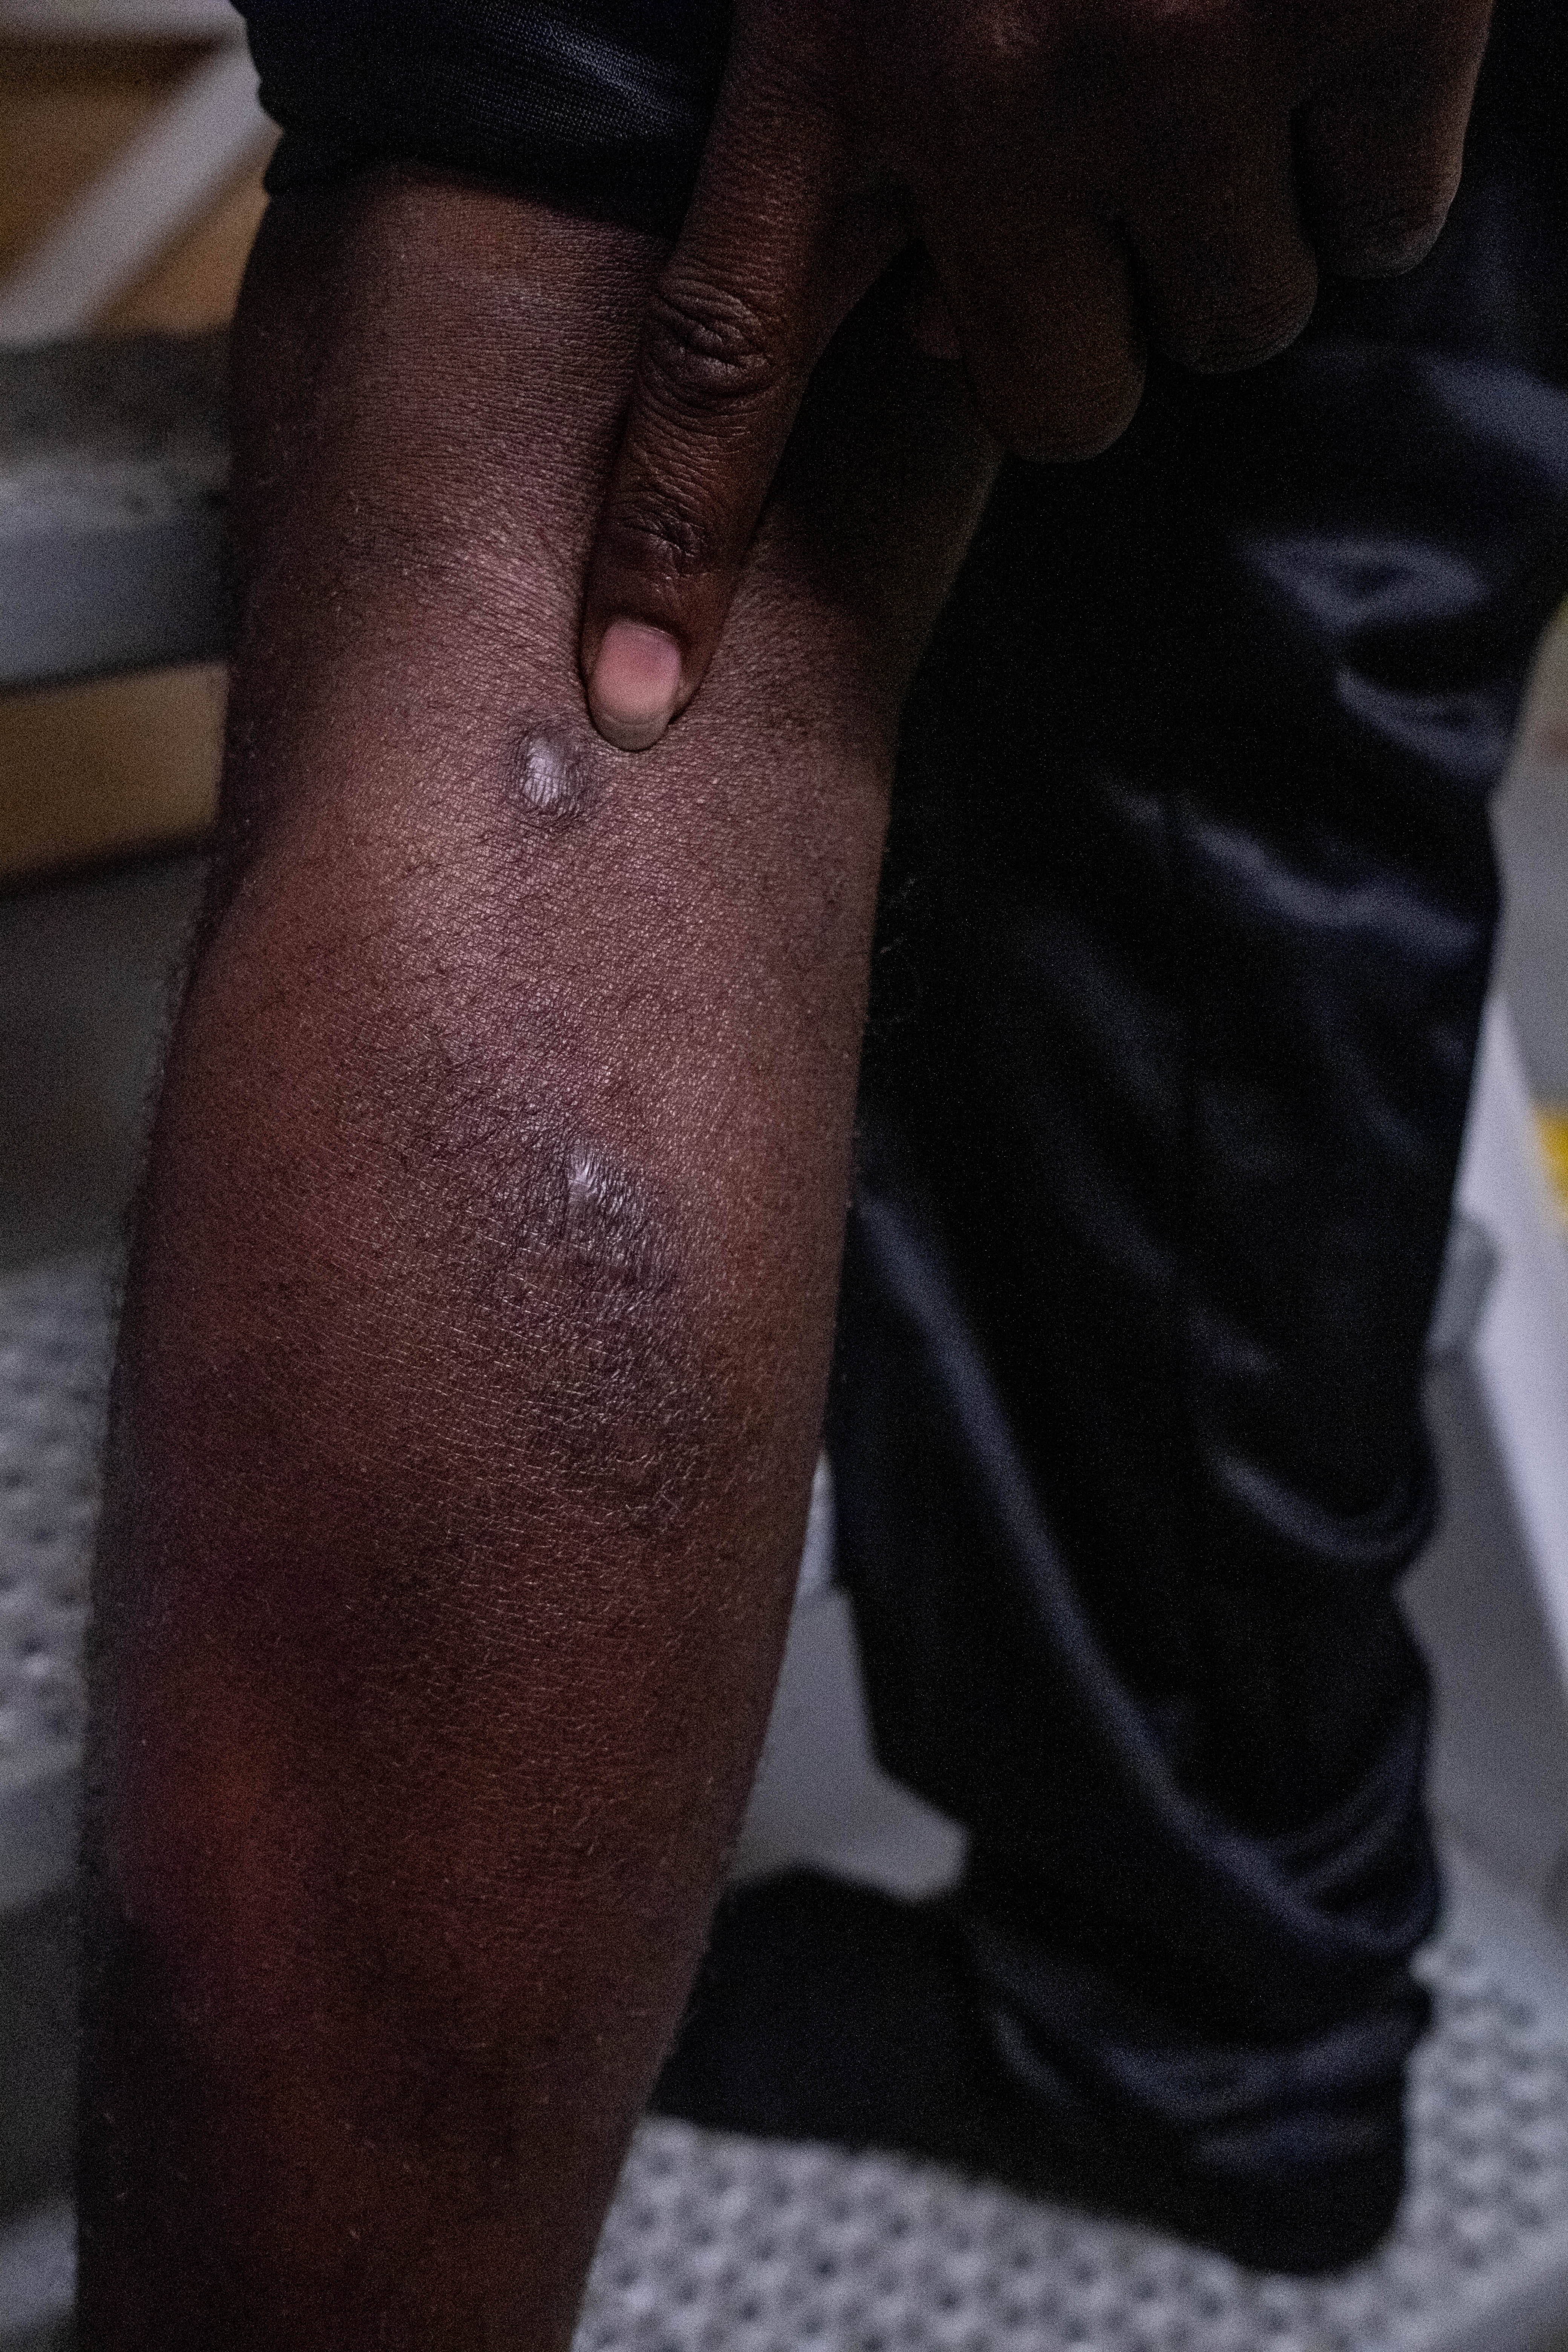 Haidar muestra las cicatrices de las heridas que le infligieron en Libia. Sufrió varias formas de tortura y violencia en el centro de detención, incluida una paliza con un objeto metálico. © Nyancho NwaNri